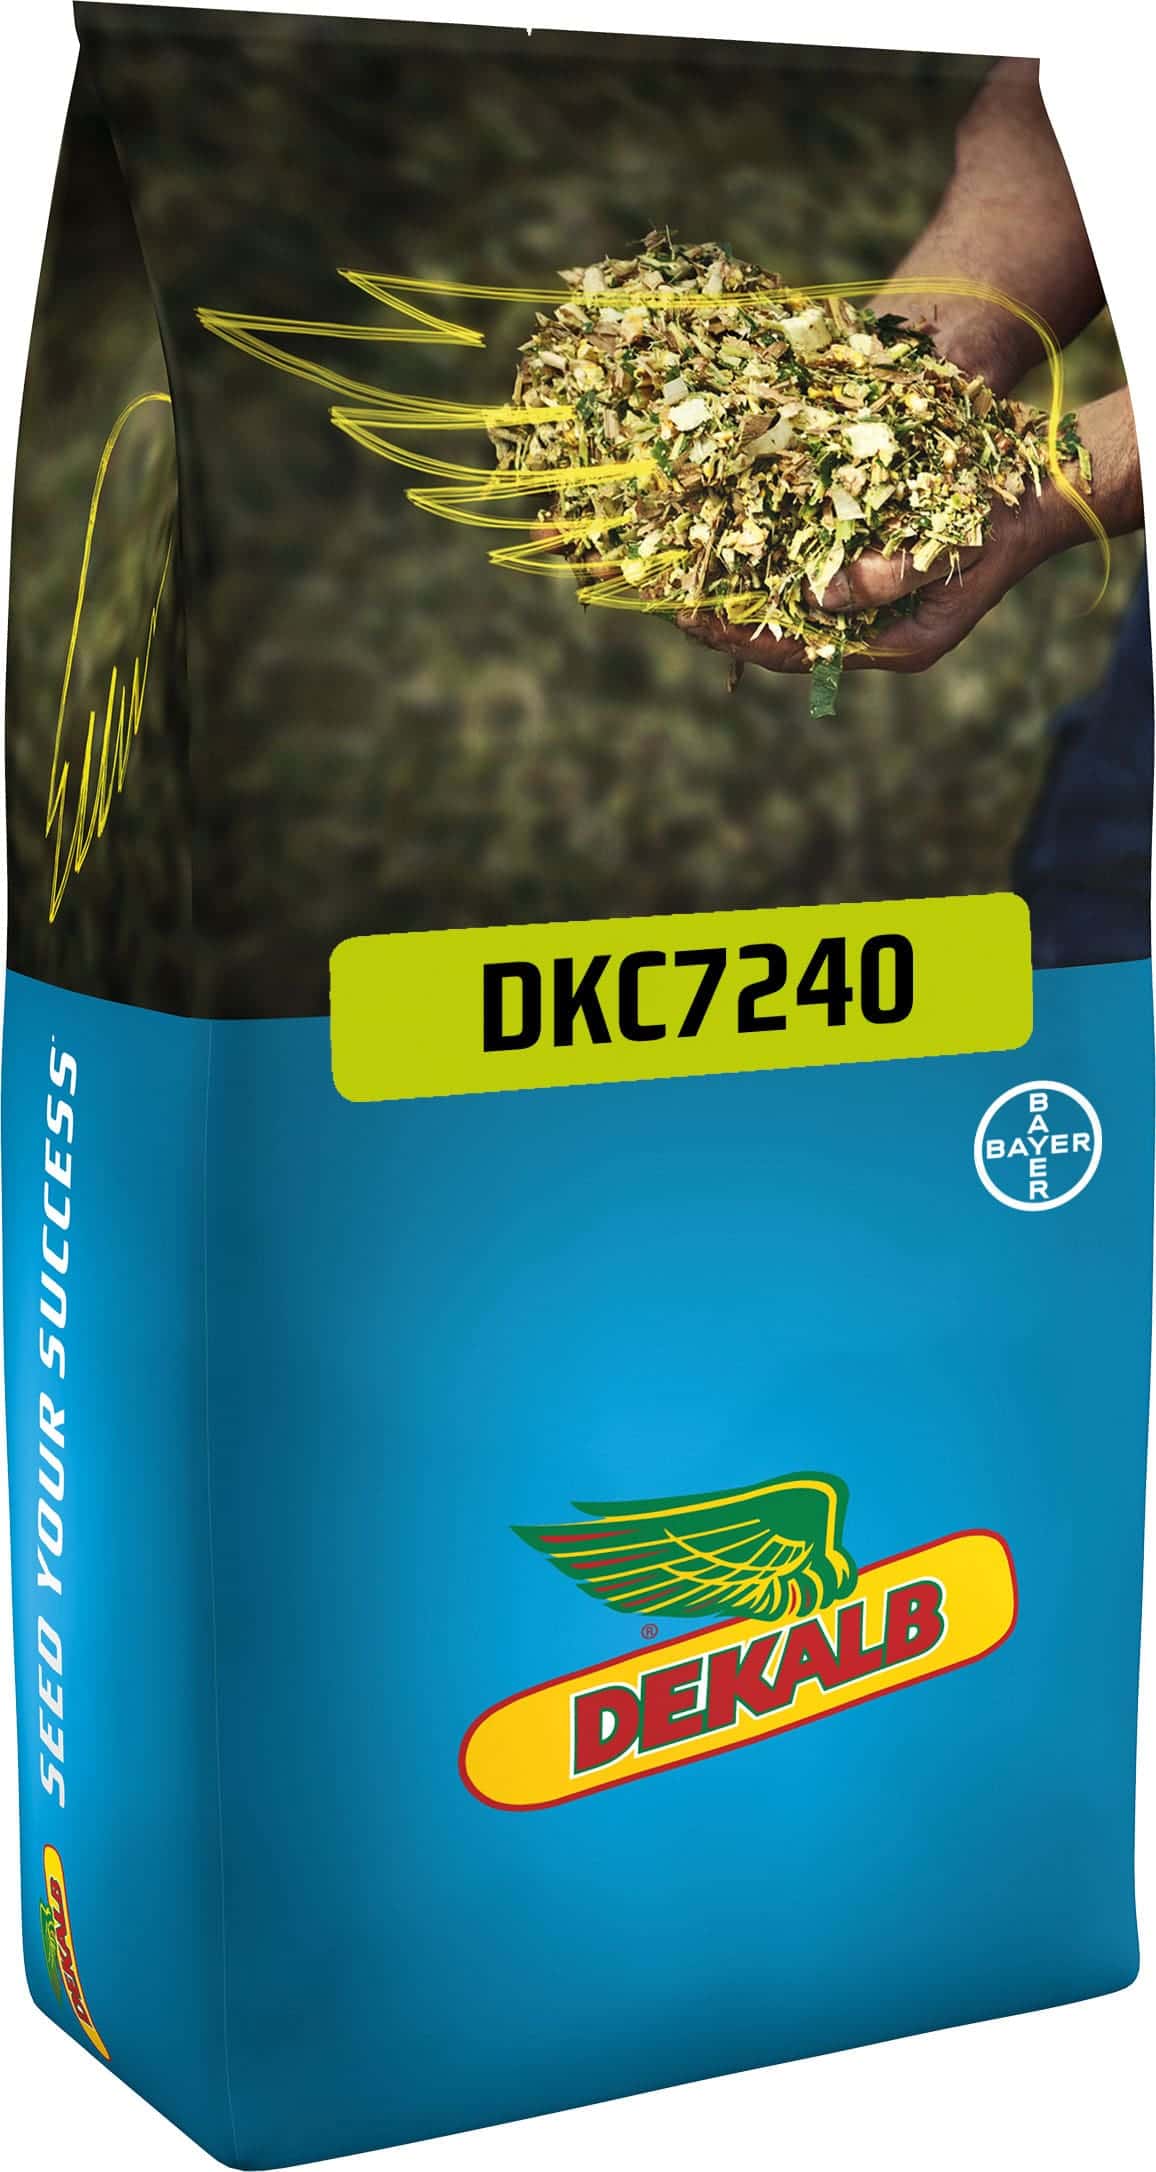 DKC7240